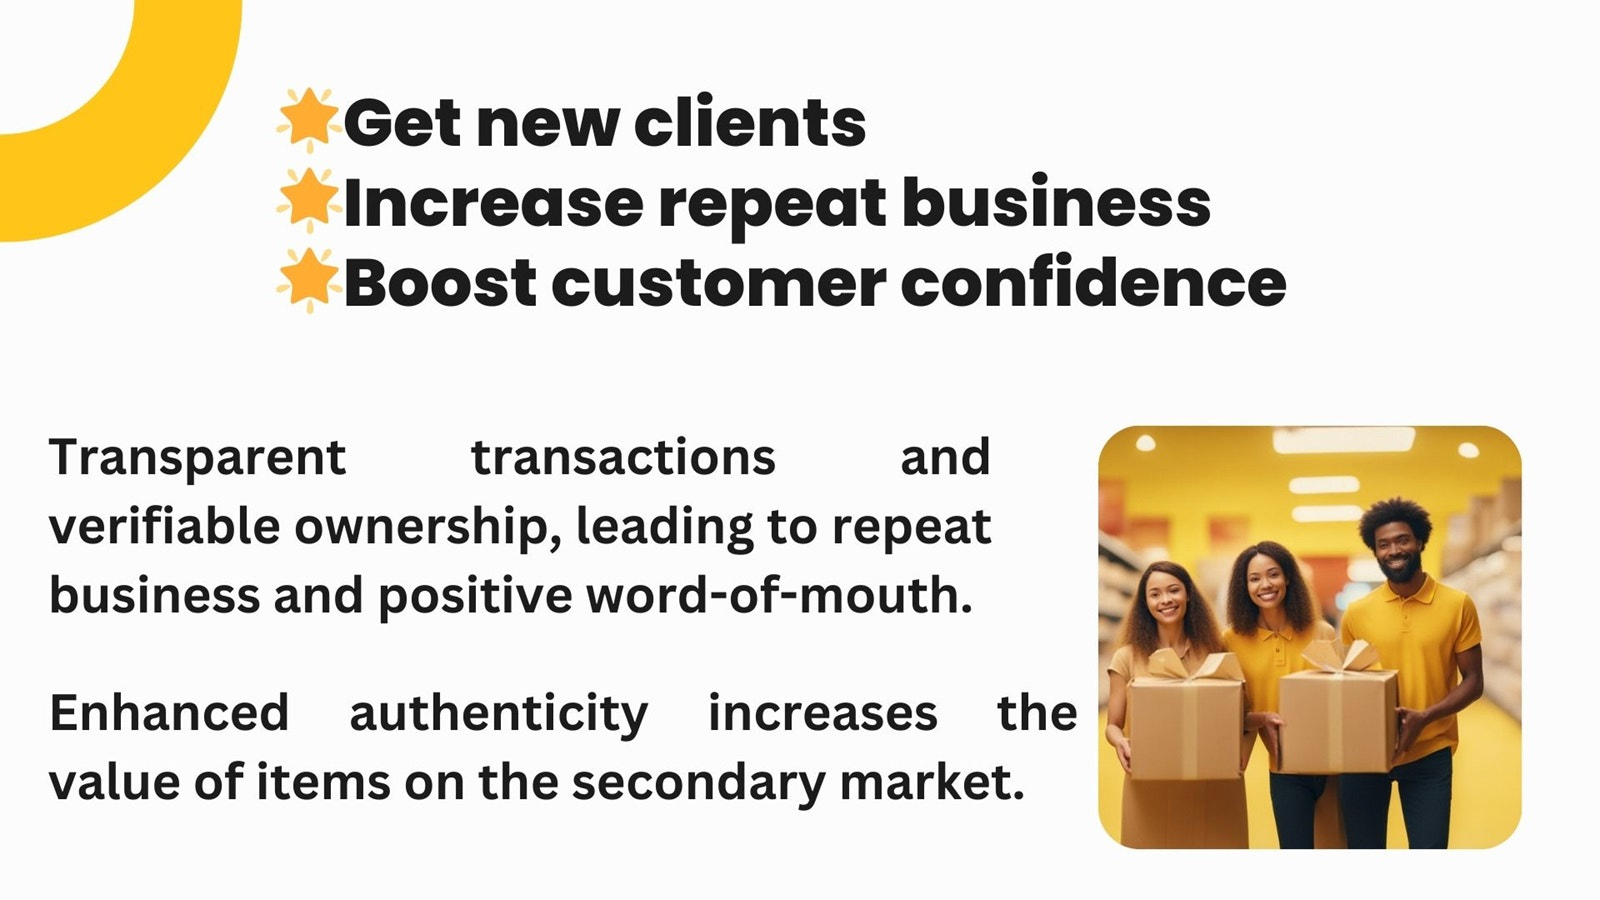 Consigue nuevos clientes, aumenta las ventas repetidas, impulsa la confianza